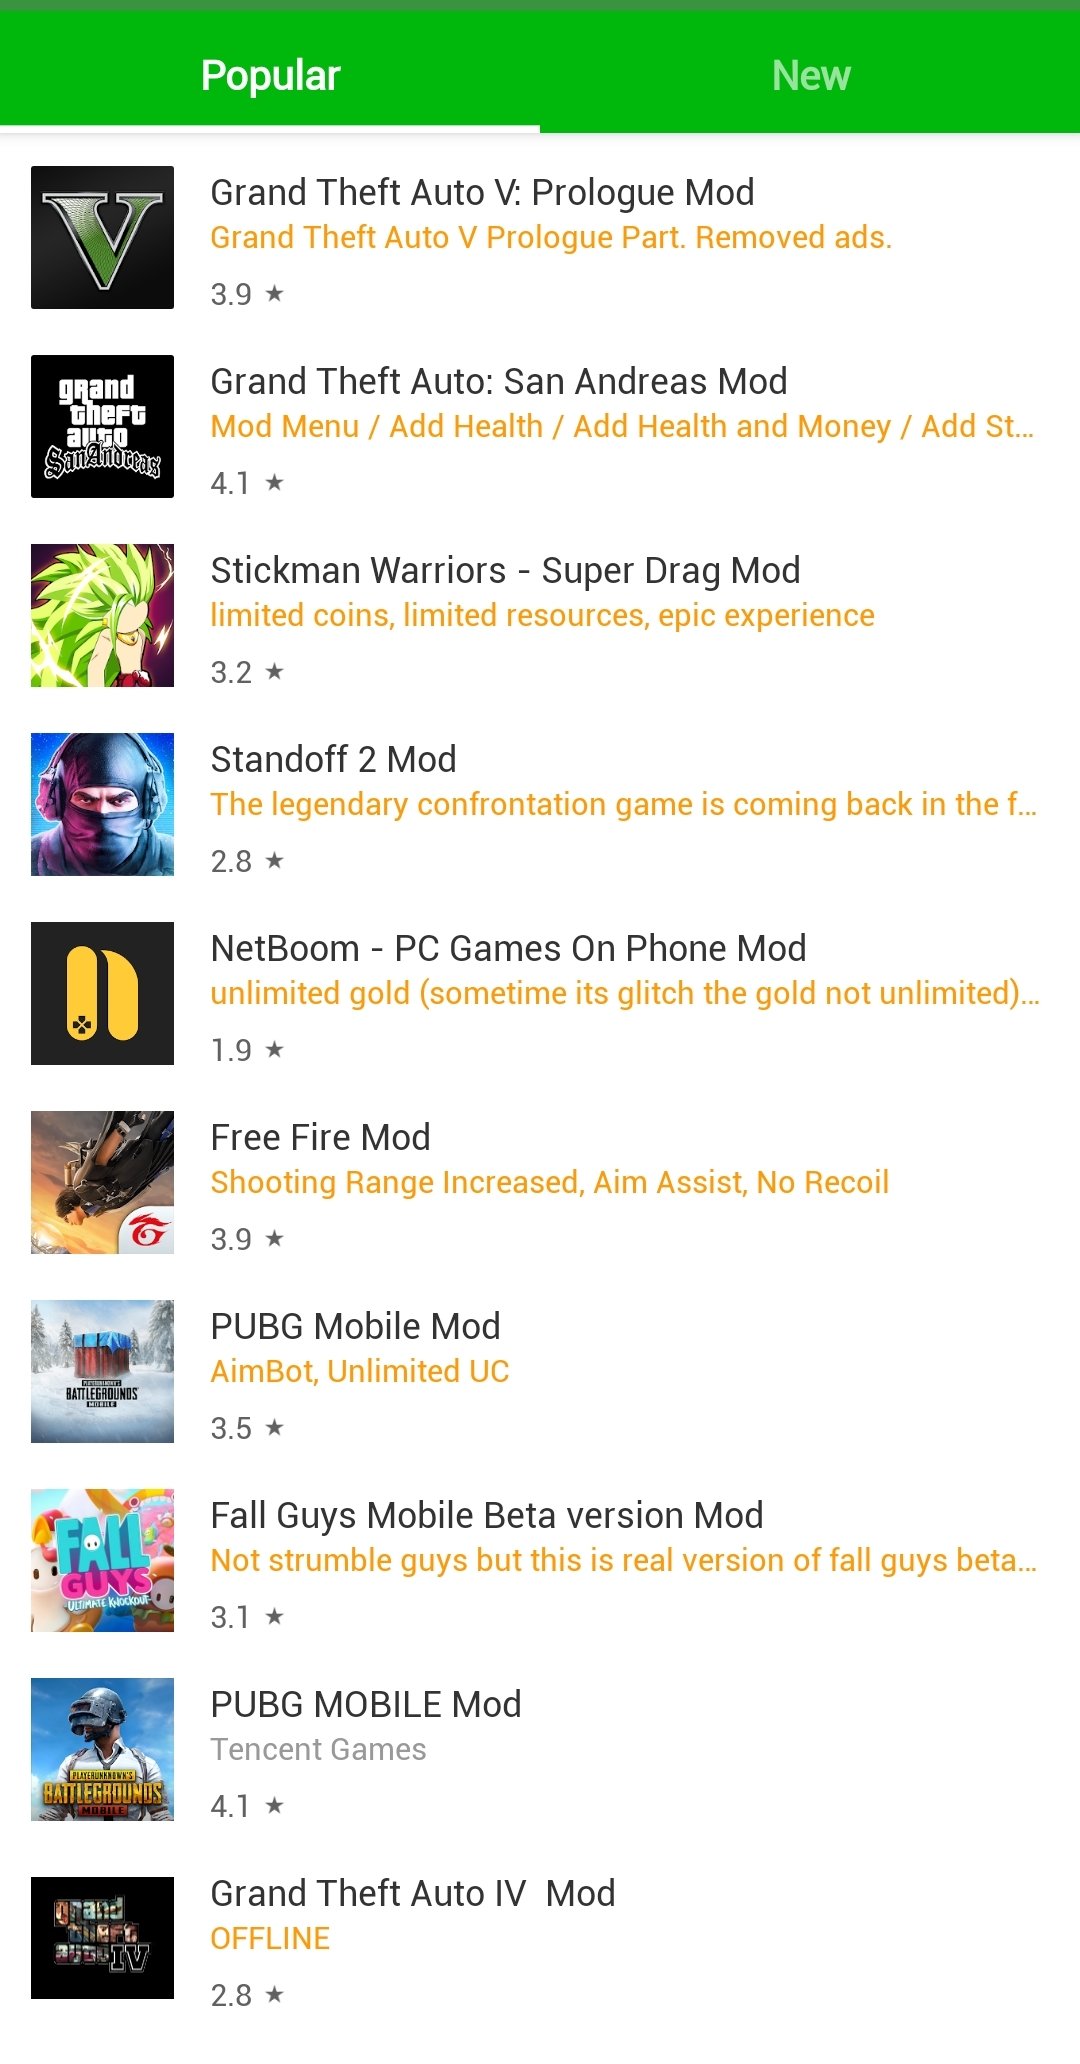 Happymod Download App Ios